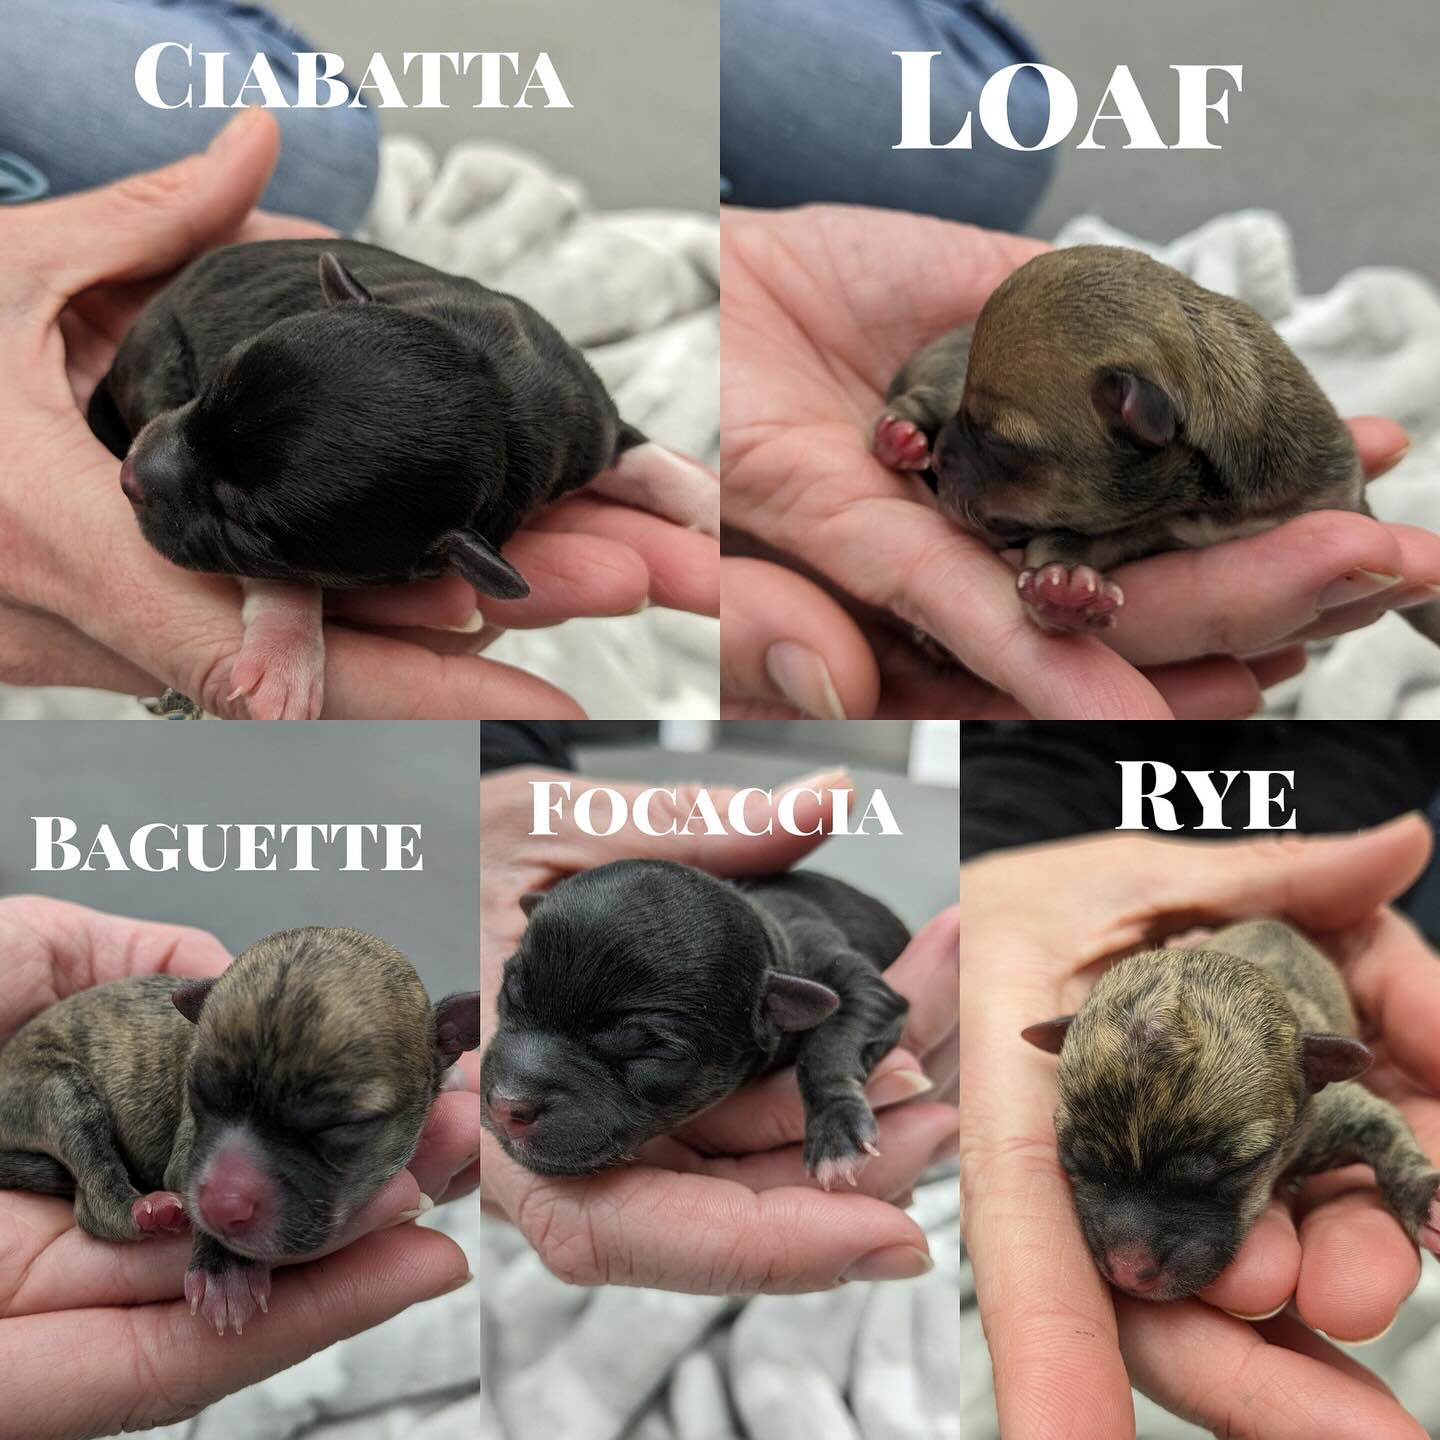 Cute five newborn puppies